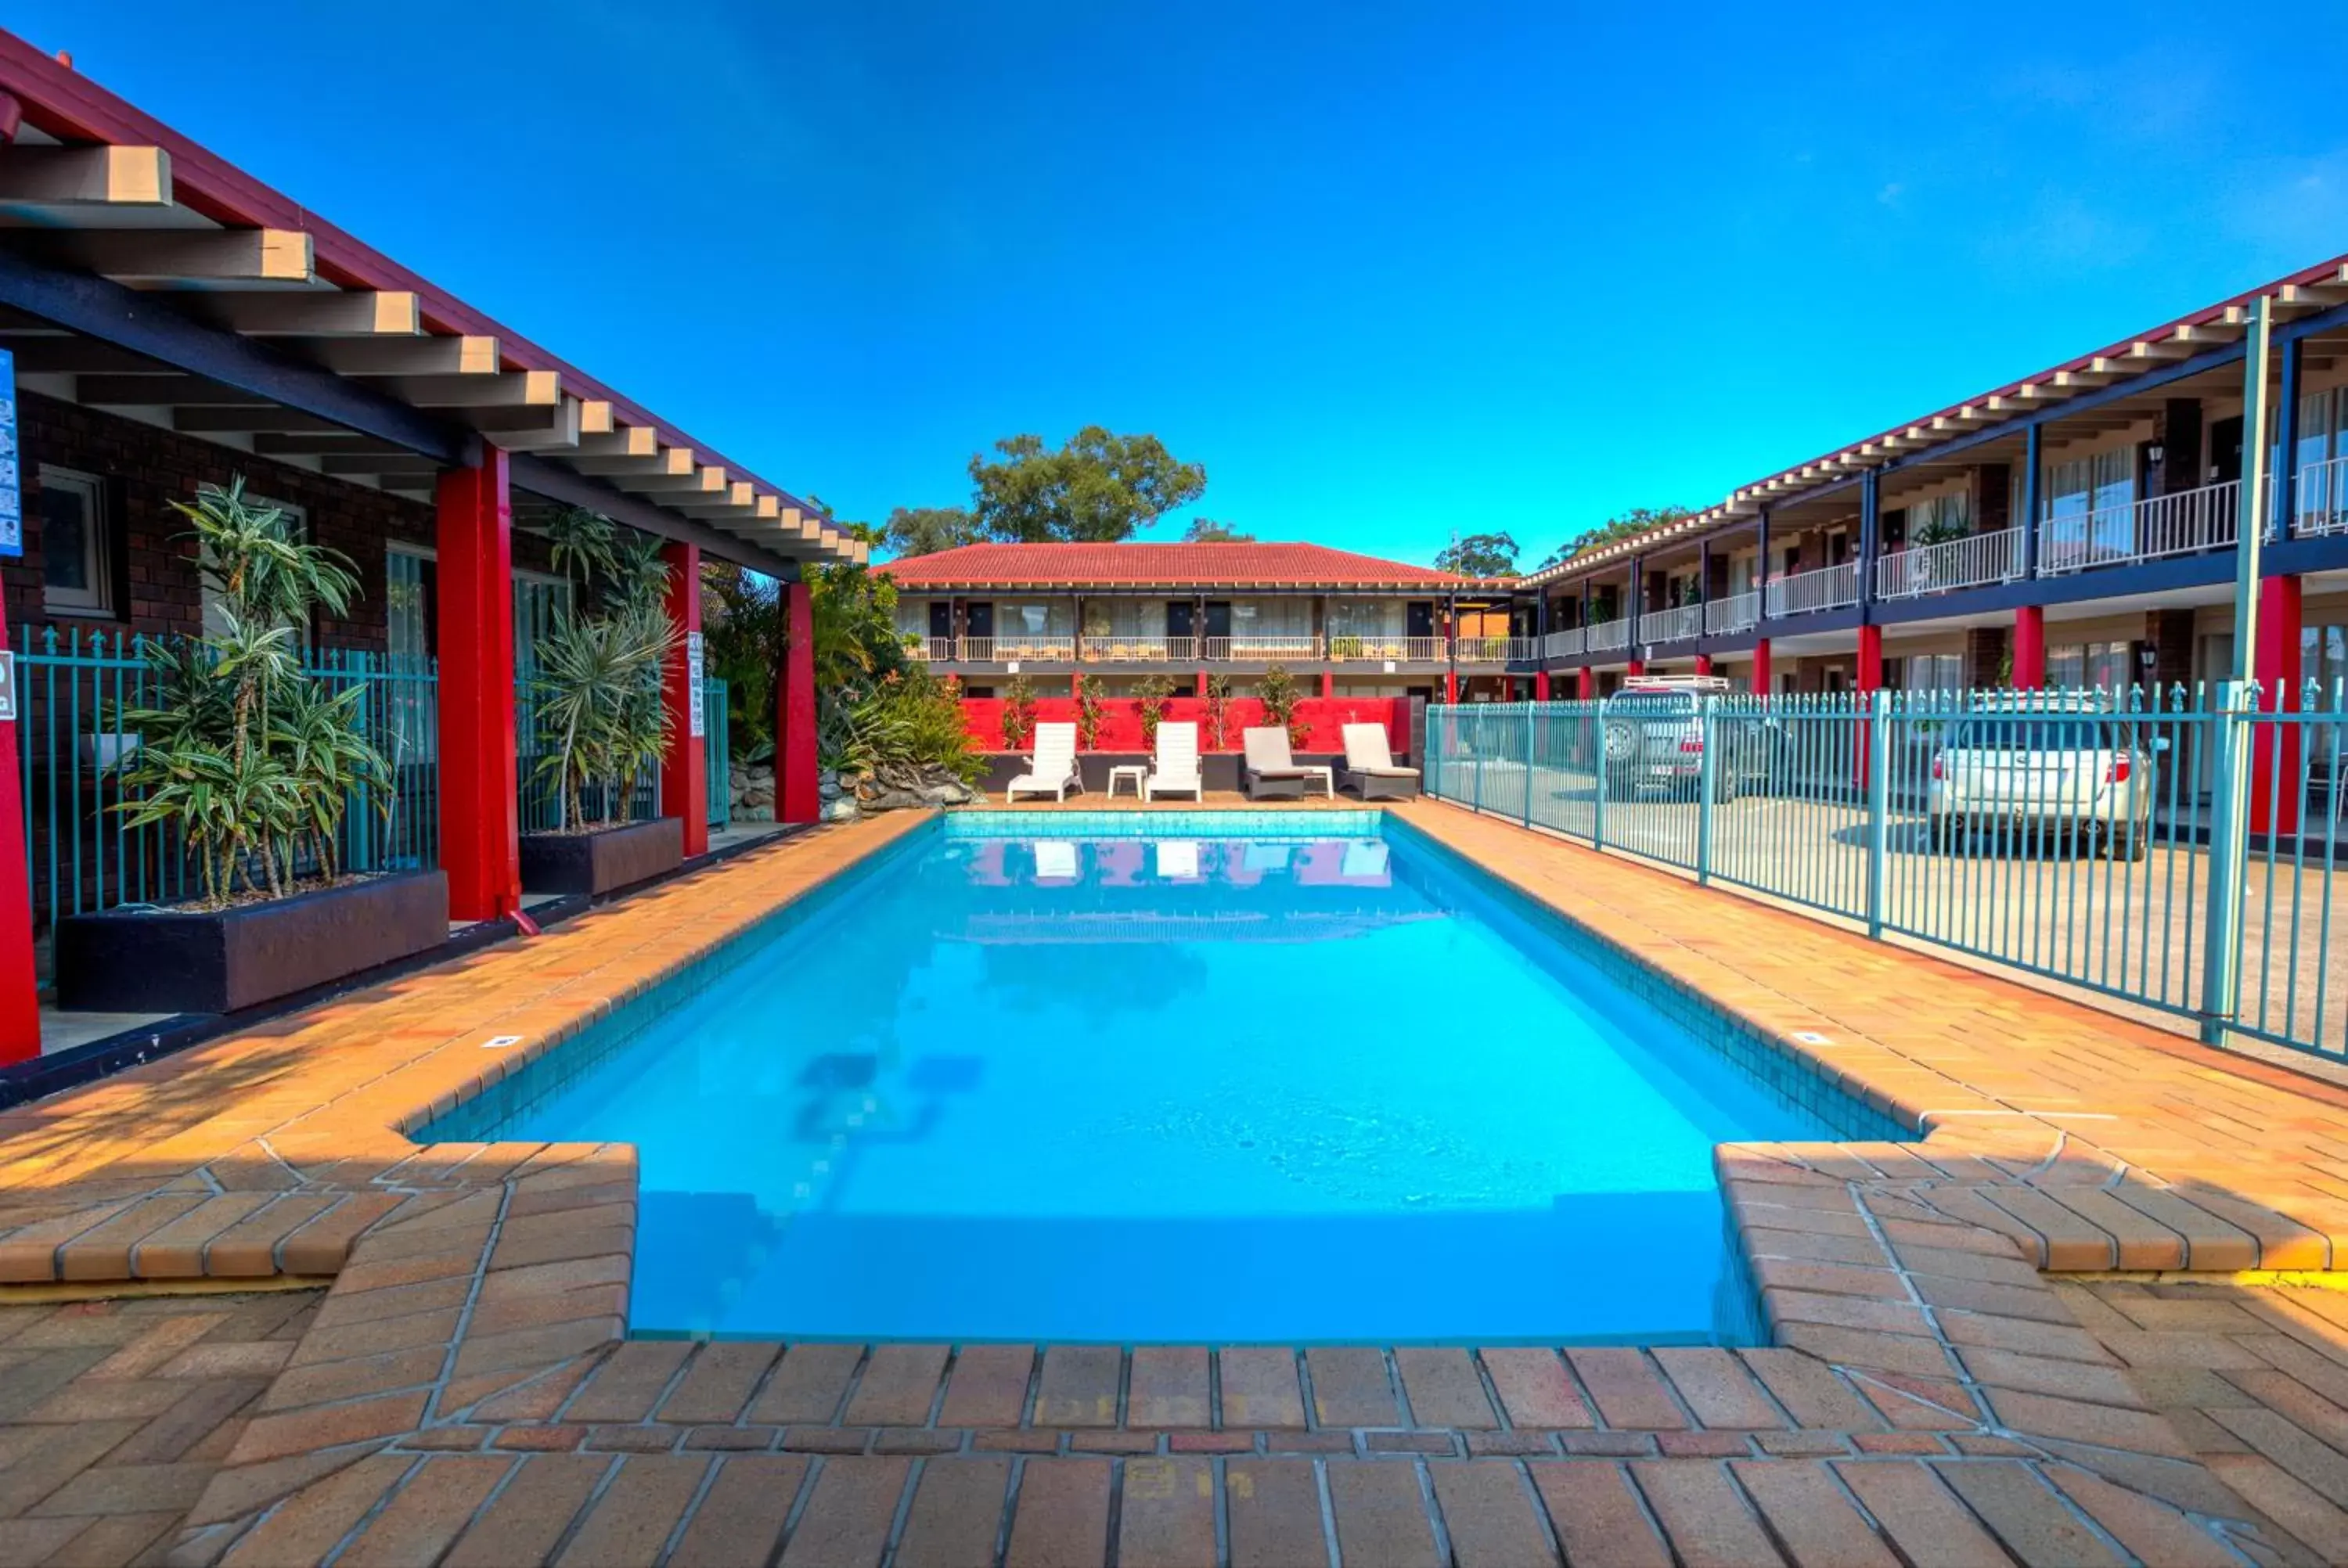 Swimming Pool in Best Western Zebra Motel